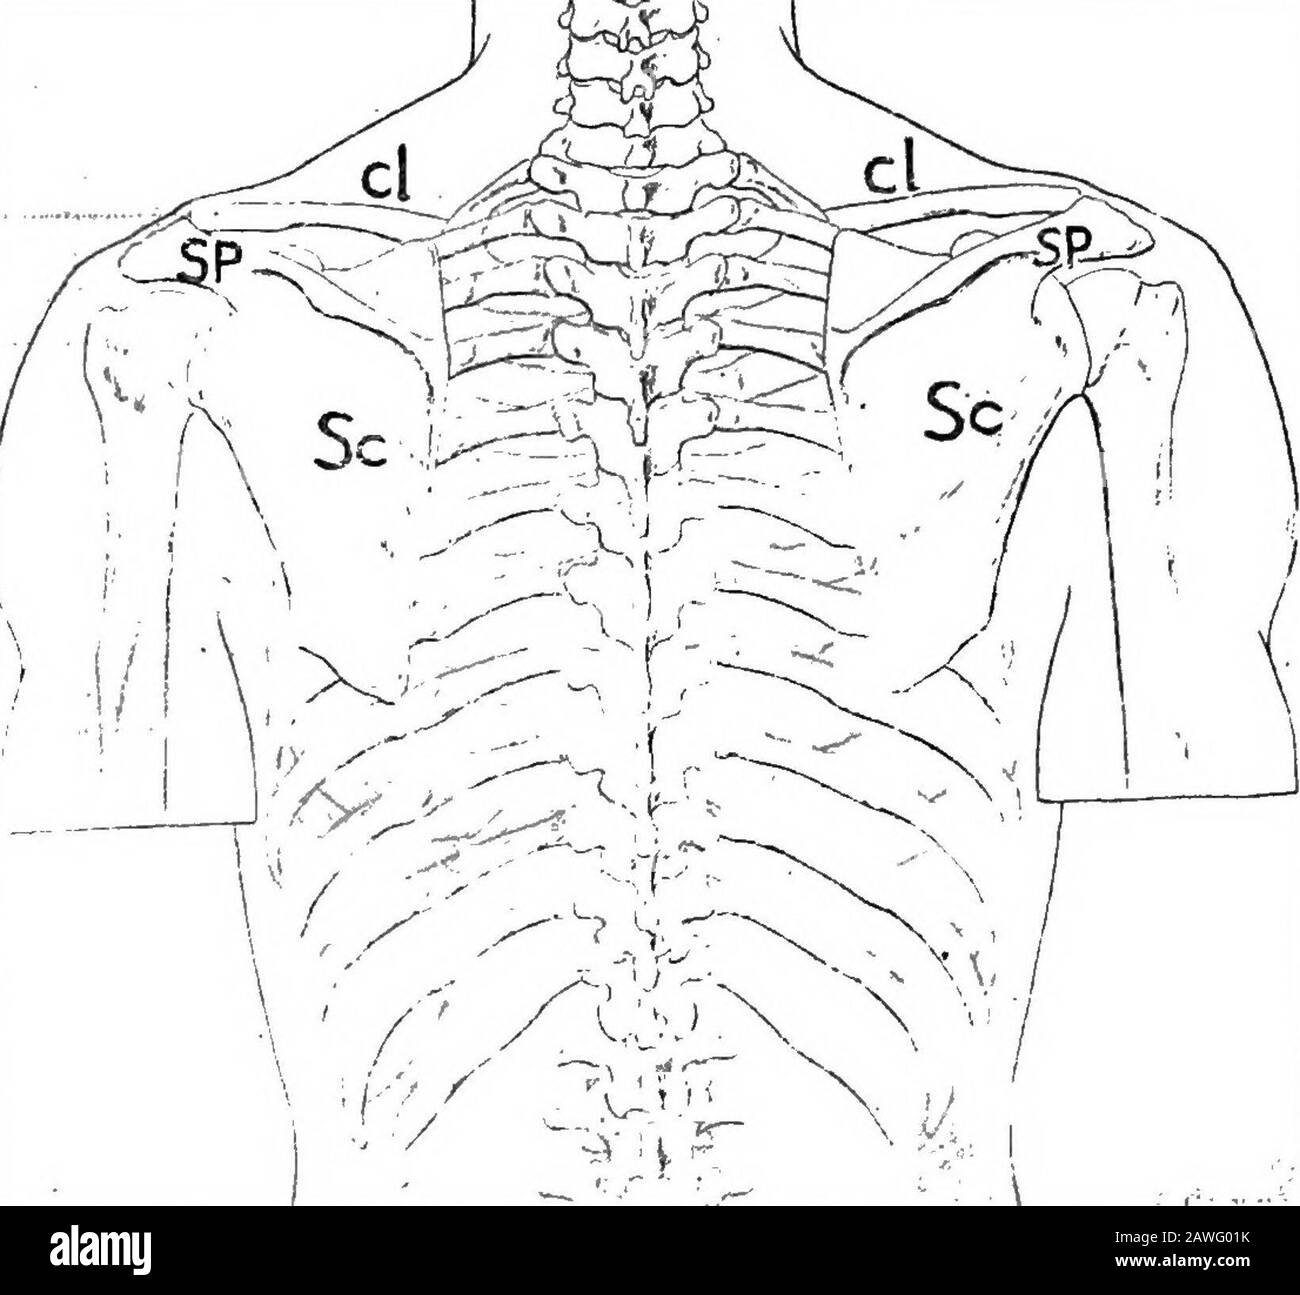 Anatomie appliquée et kinésiologie, le mécanisme du mouvement musculaire . o l'arrière. La surface supérieure est lisse et la surface inférieure rugueuse ; l'extrémité intérieure est plus épaisse et l'extrémité extérieure moreaplatie (Fig. 29). La scapula est un os triangulaire plat avec deux projections proéminentes sur elle: La colonne vertébrale de l'arrière et le coracoid de l'avant. La colonne vertébrale a une terminaison aplatie appelée acromion.UNE impression profonde ci-dessus est nommée de sa position la fosse supraspineuse, tandis que la fosse moins profonde ci-dessous est appelée la fosse infra-spineuse. L'humérus s'articule autour d'une douille peu profonde qui atte l'itinéraire Banque D'Images